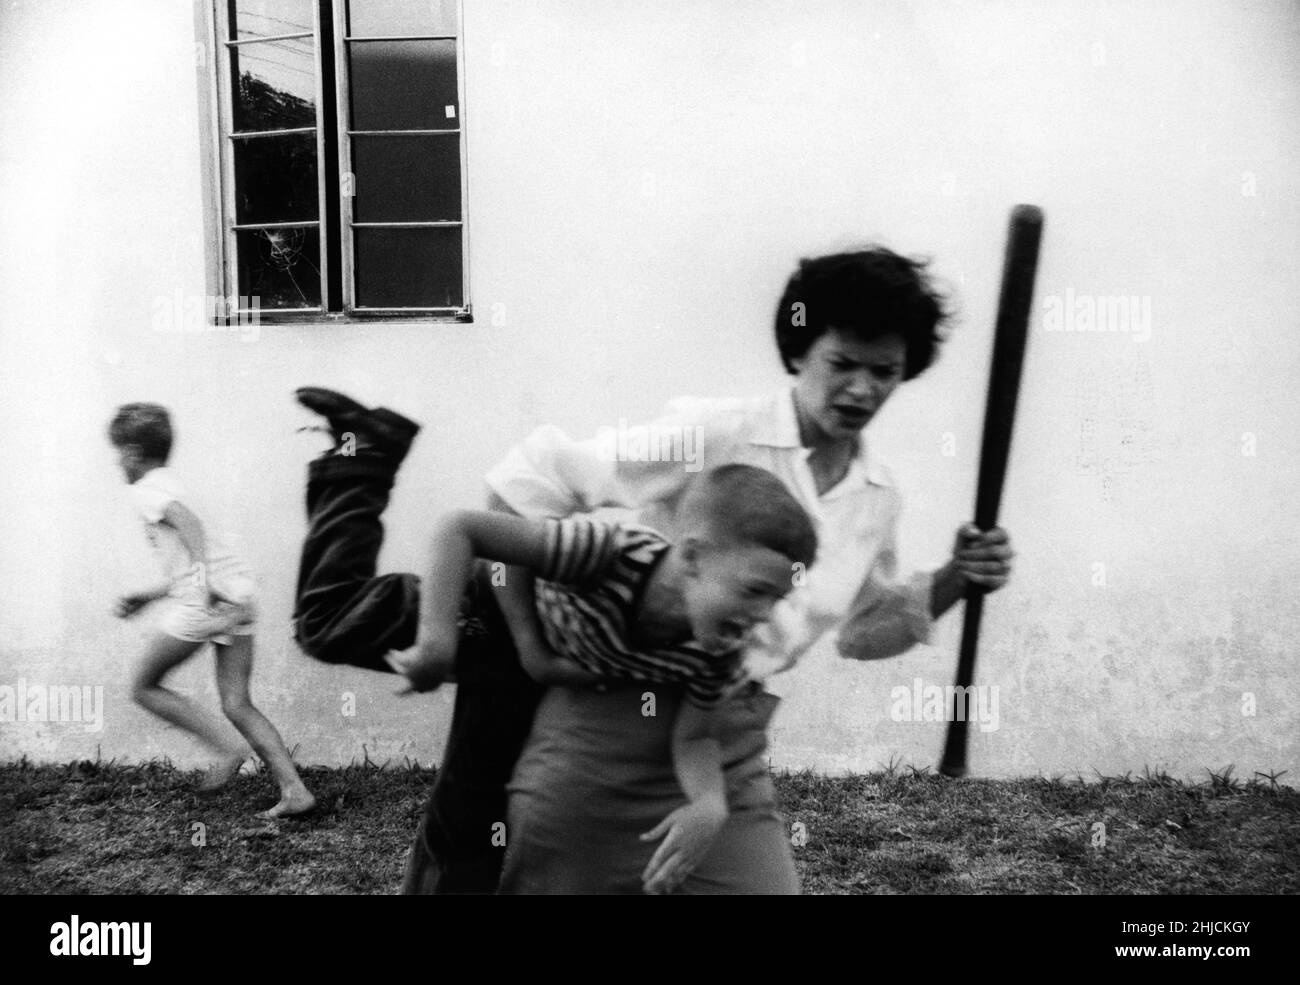 Wütend Mutter diszipliniert Sohn, nachdem er das Nachbarfenster mit einem Baseballspiel brach, während ein anderes Kind entkommt. Stockfoto